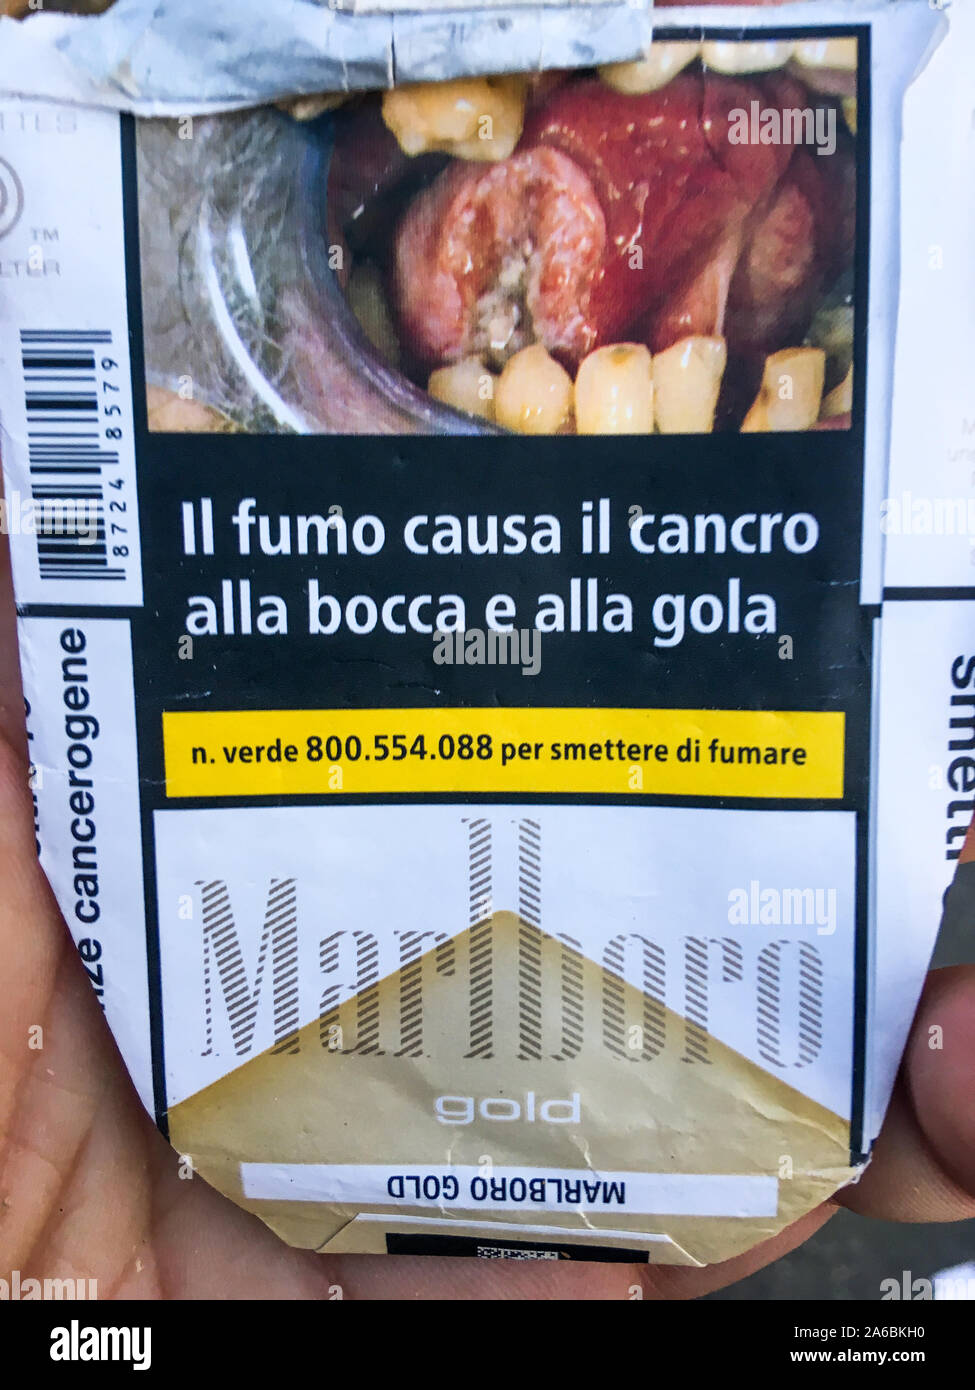 Paquete de cigarrillos Marlboro italiano con señales indicando los riesgos  de cáncer, Milán, Lombardía, Italia Fotografía de stock - Alamy